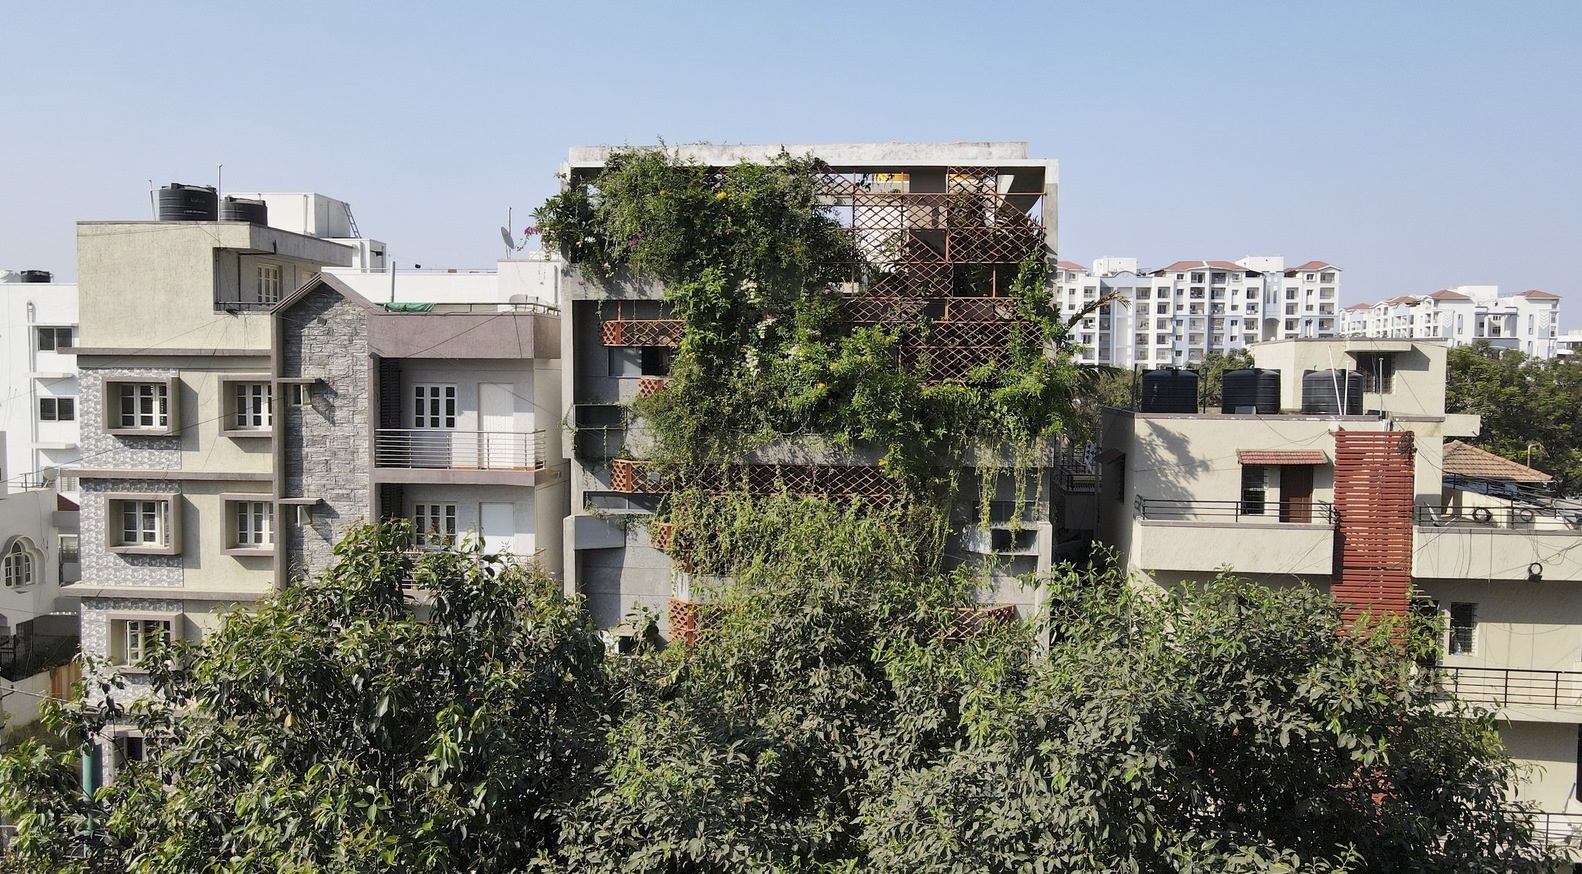 View - Chung cư mini cũ ở Ấn Độ xanh mướt, độc đáo sau khi được cải tạo | Báo Dân trí